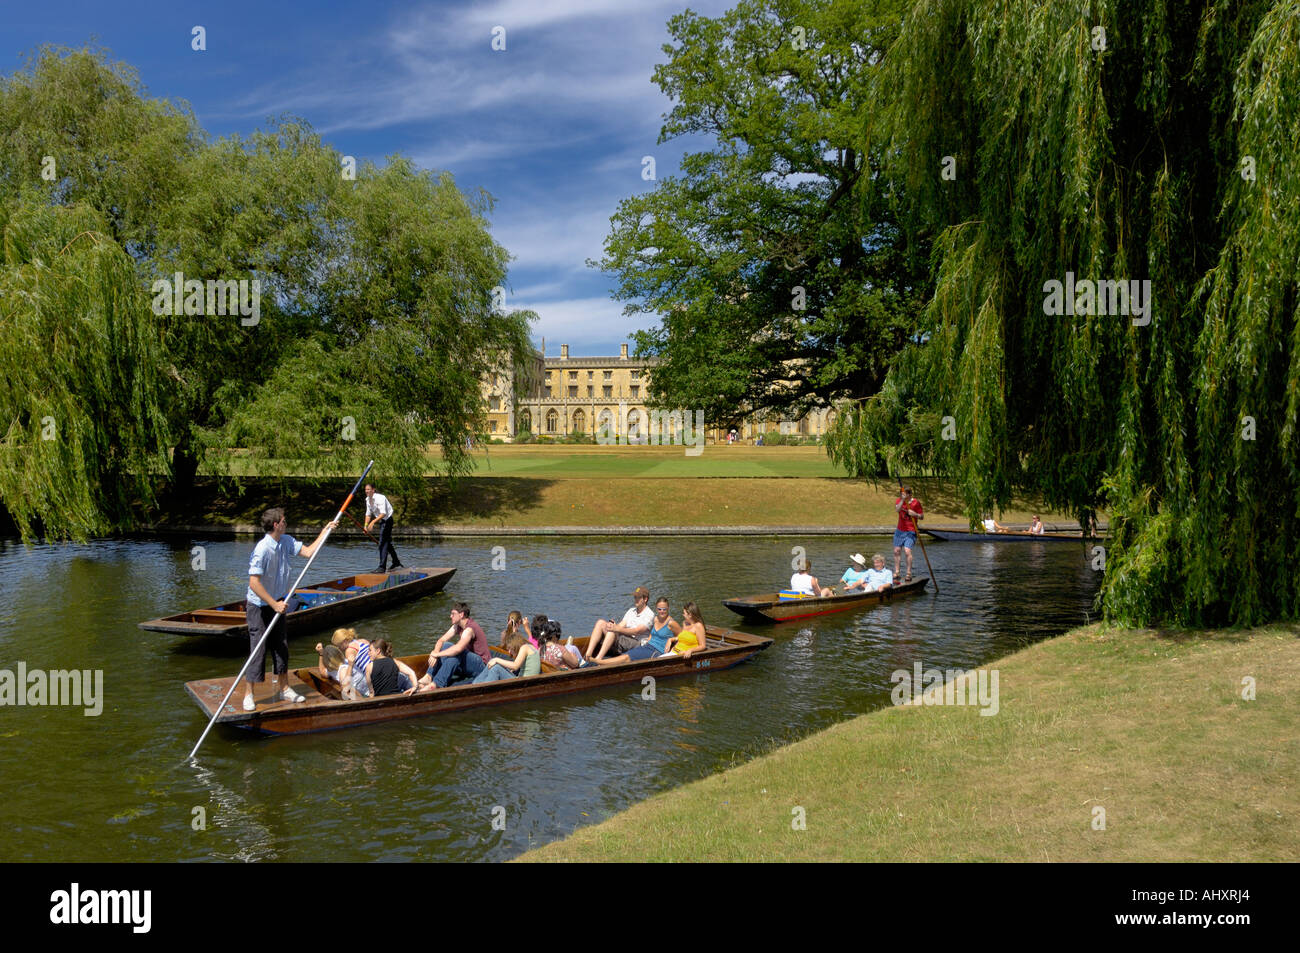 Stechkahn fahren am Fluss Cam in der Nähe von St. Johns College in Cambridge, England Stockfoto